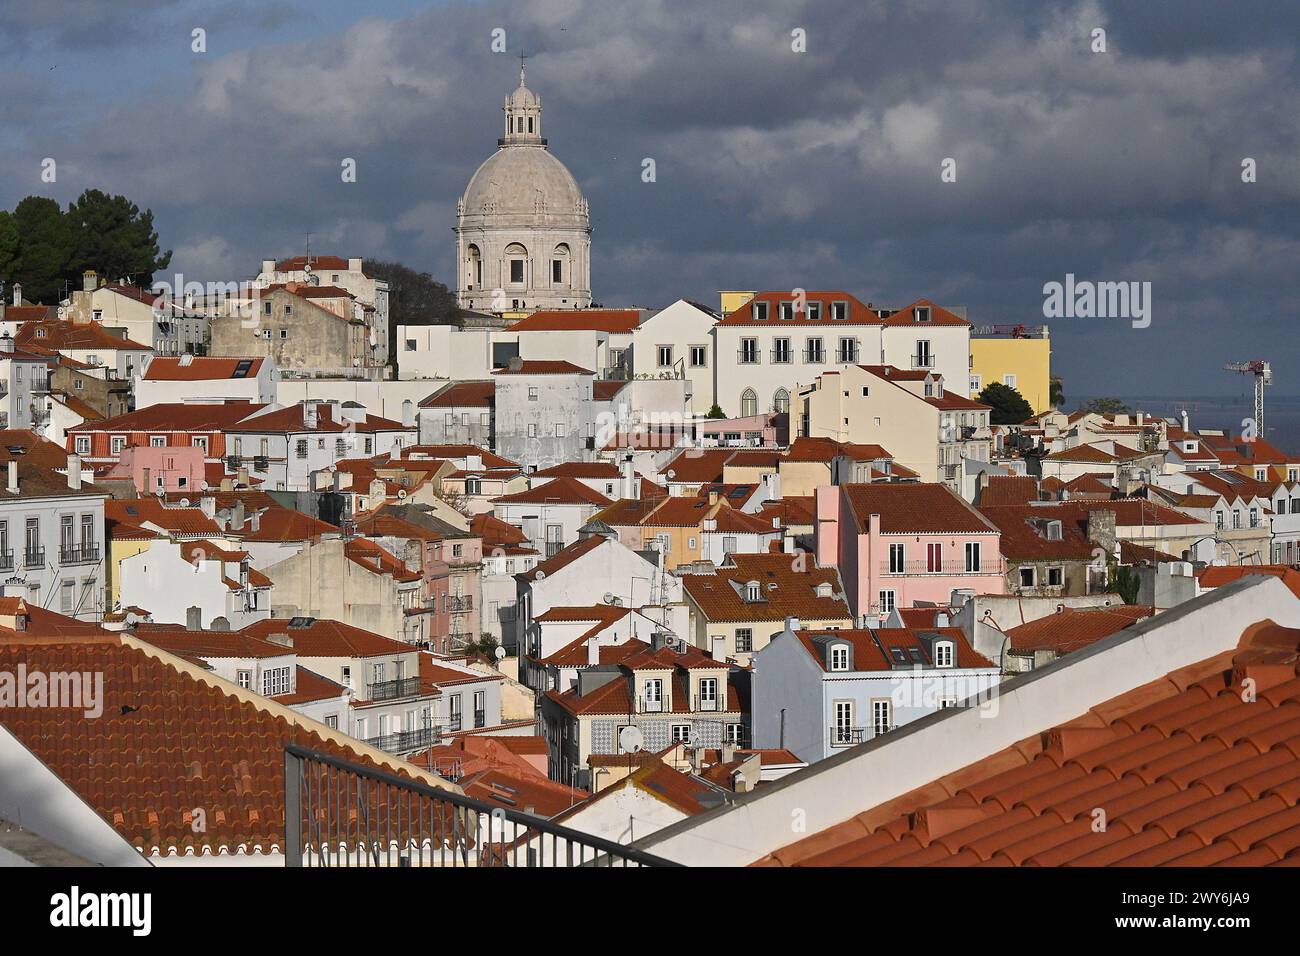 Portogallo, Lisbona: Panoramica dei tetti del quartiere di Alfama e della Chiesa di Santa Engracia convertita nel Pantheon Nazionale dal belvo Foto Stock